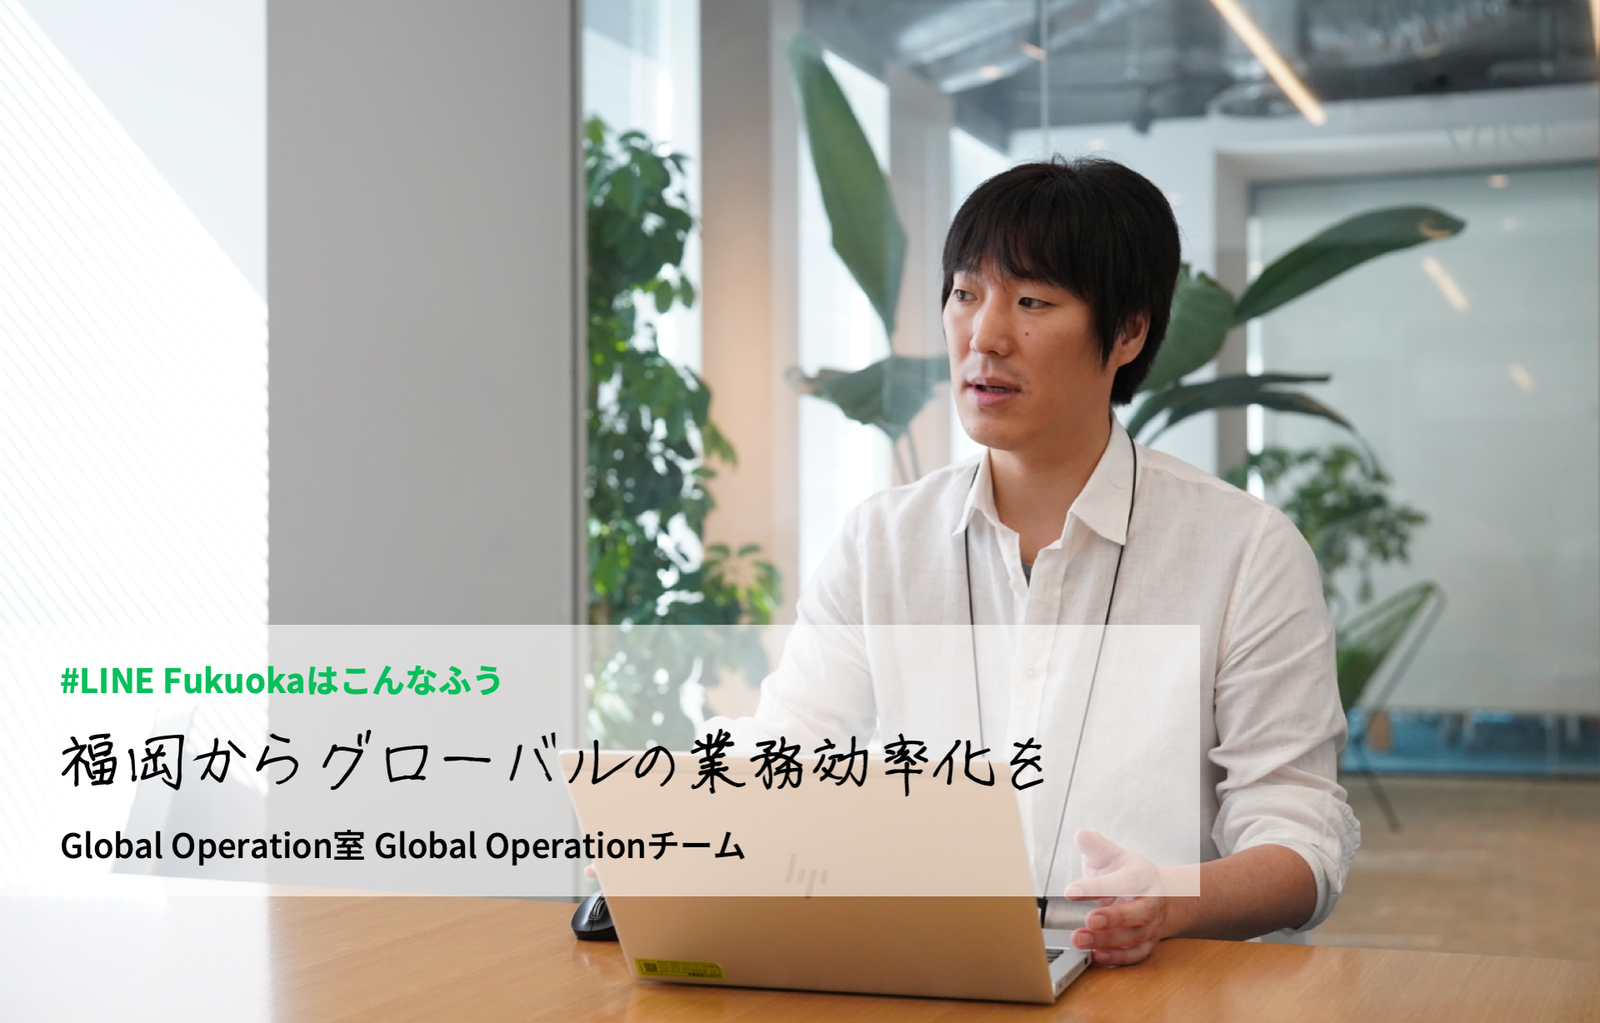 「福岡からグローバルの業務効率化を」Global Operation室のわたしがやっていること サムネイル画像